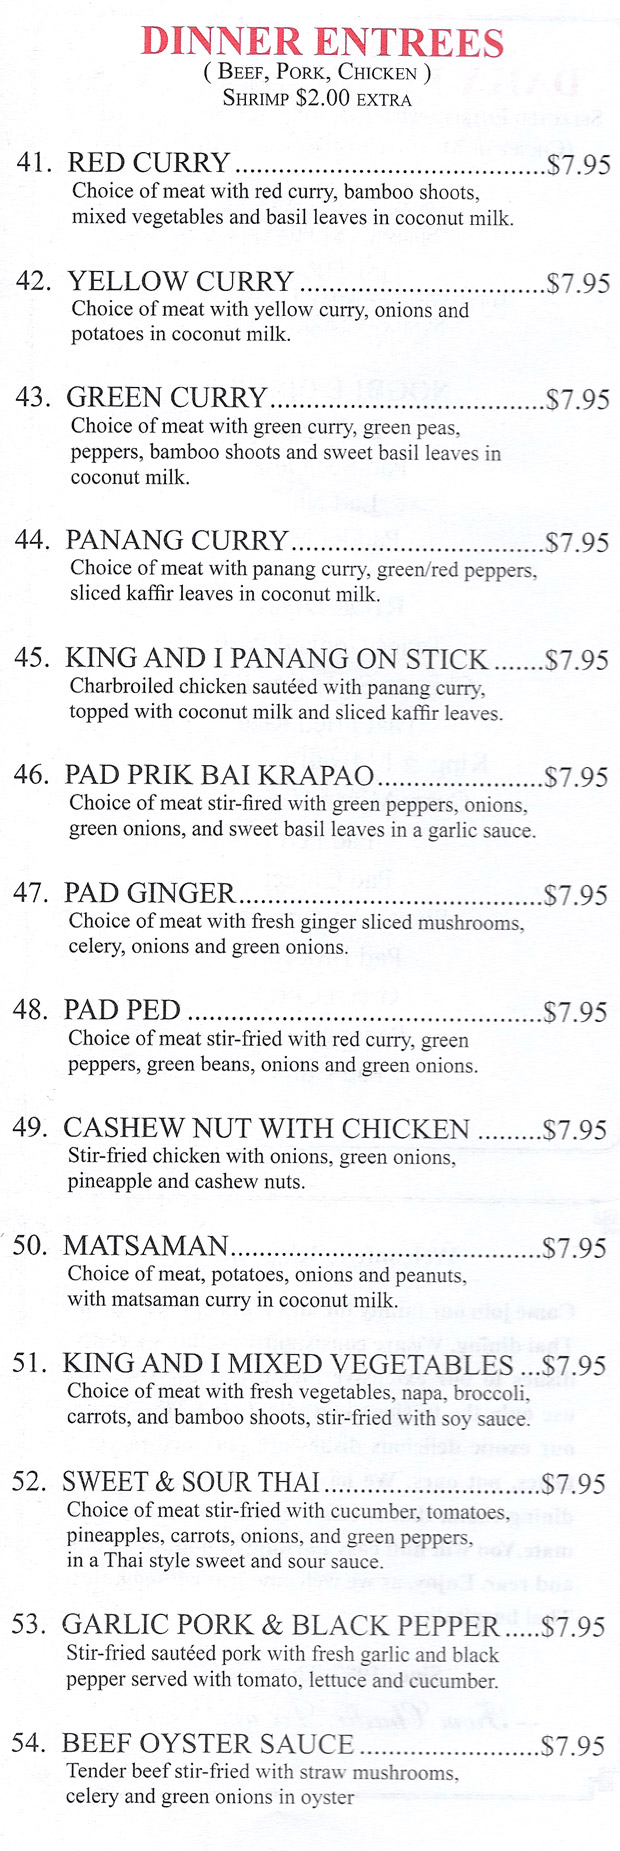 Menu for King & I Thai Restaurant in oak park, Illinois